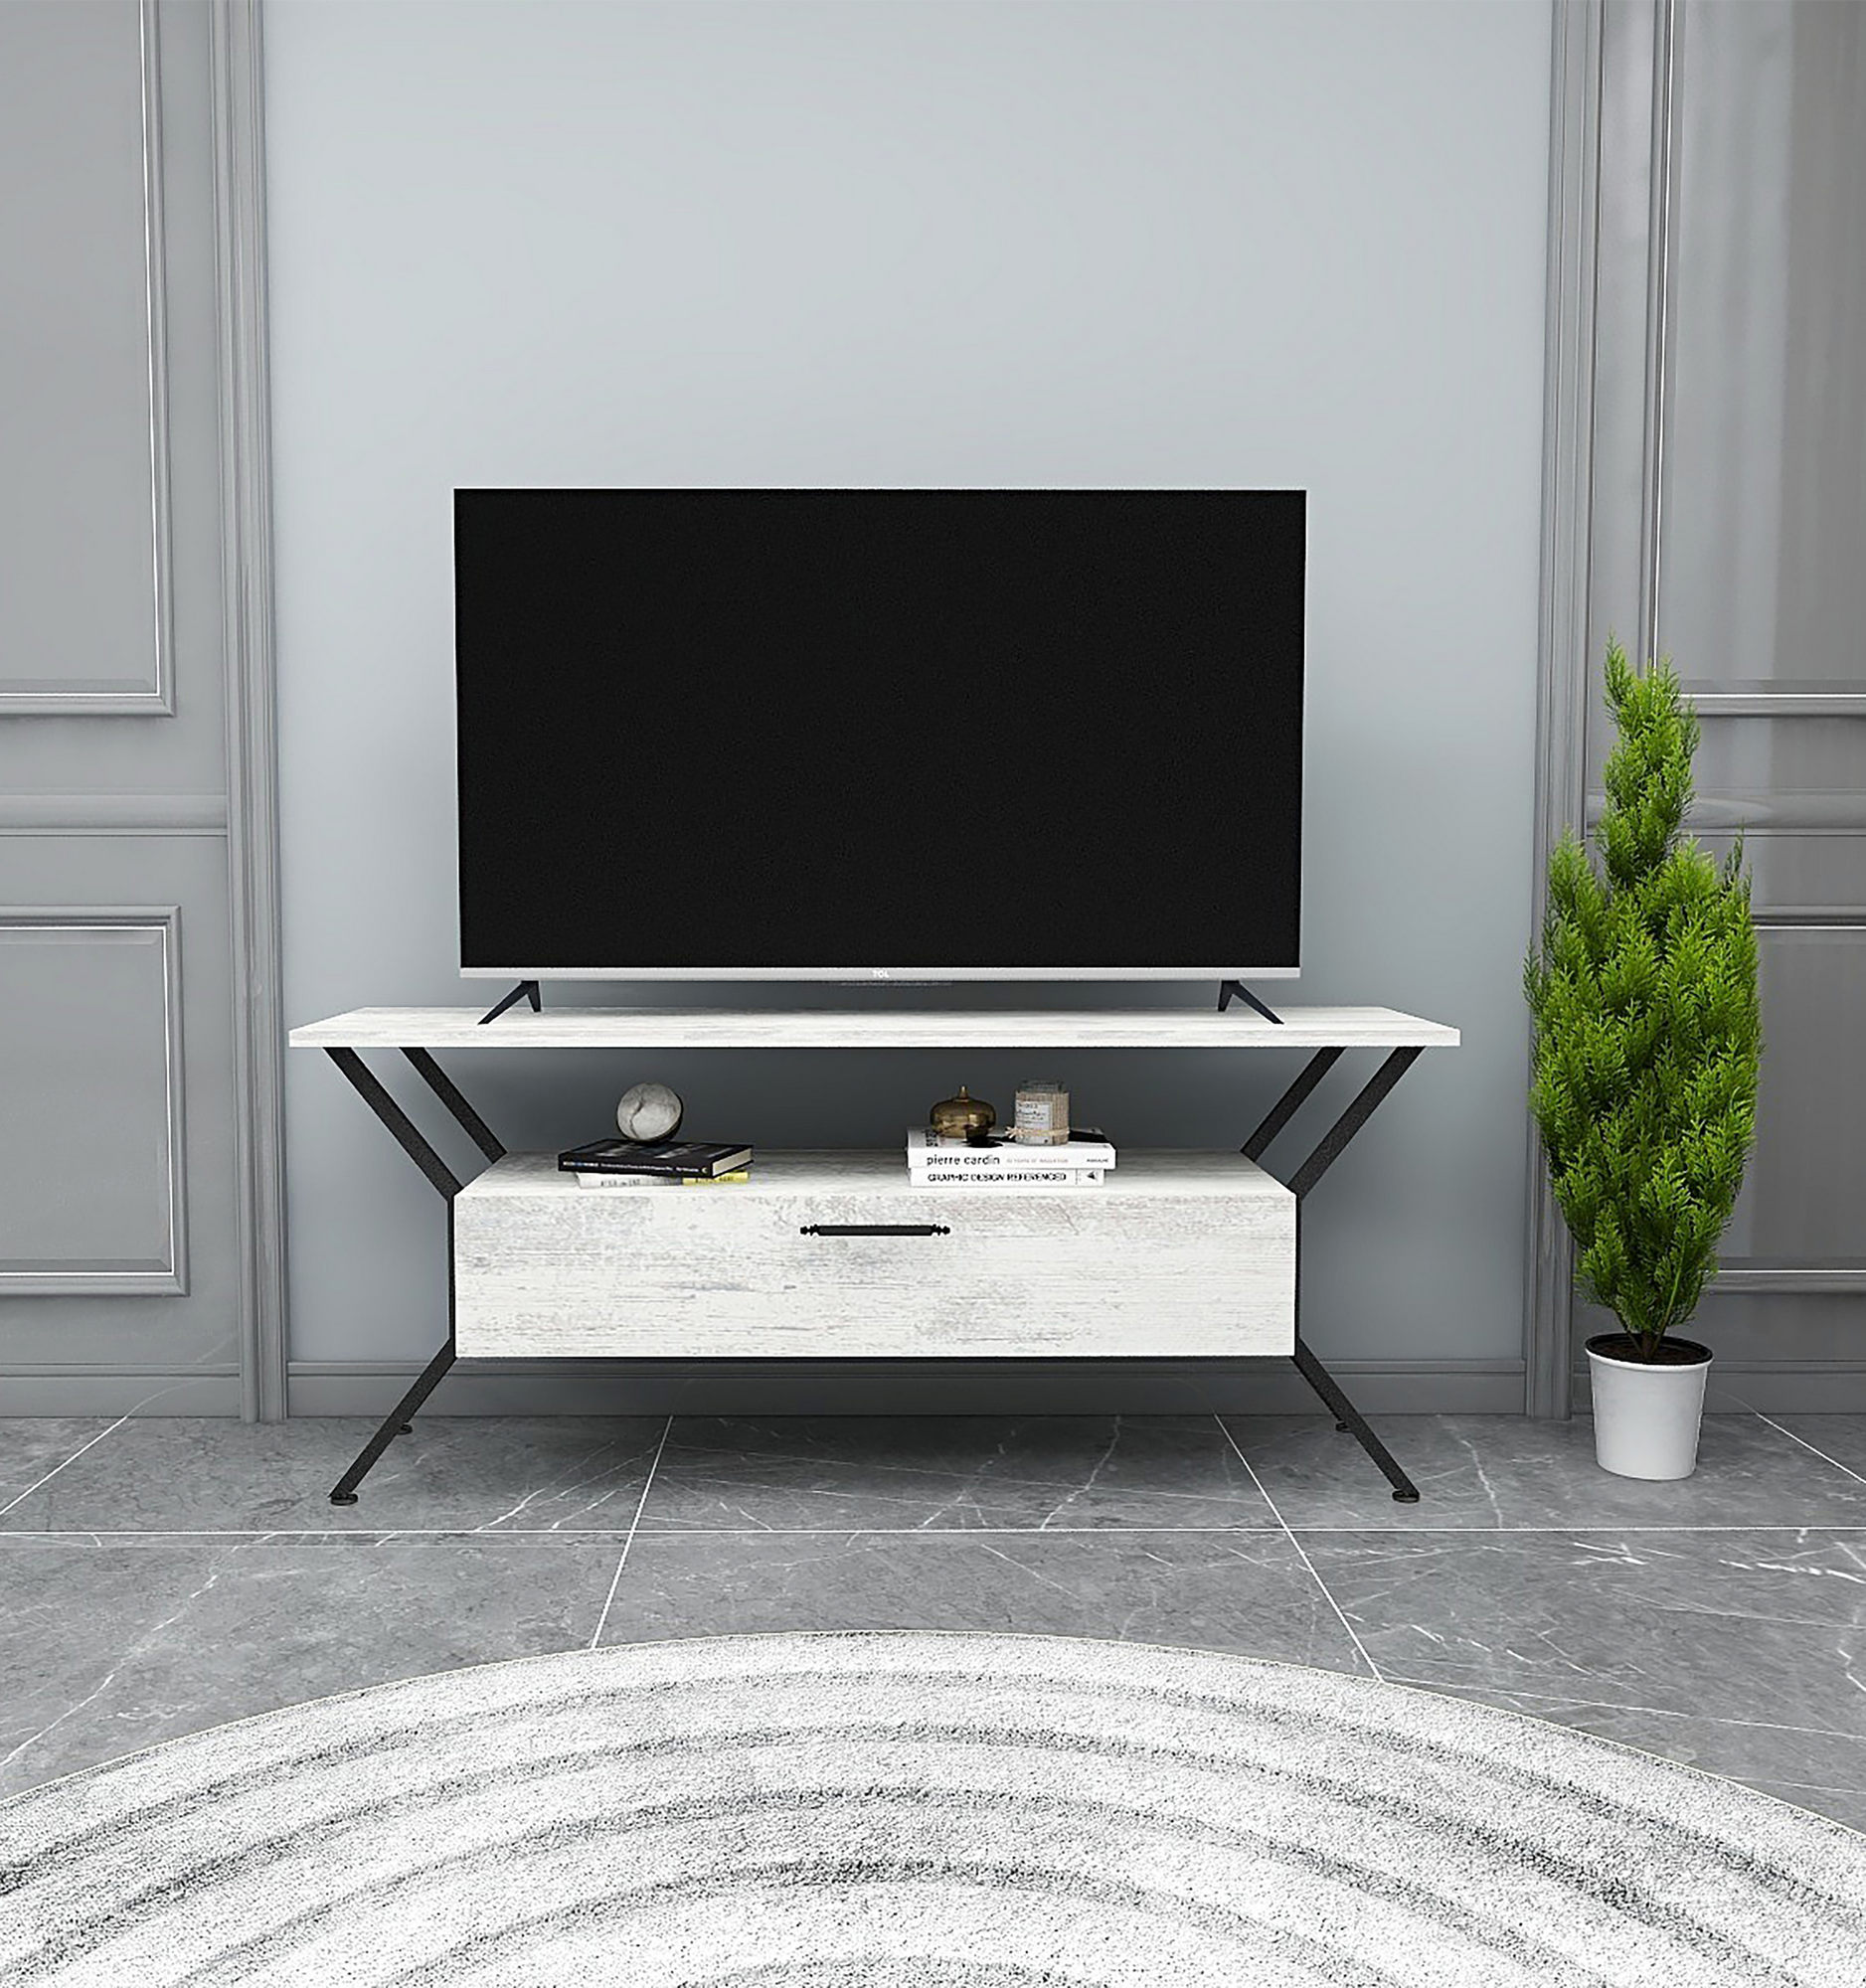 Televizní stolek TARZ šedý černý